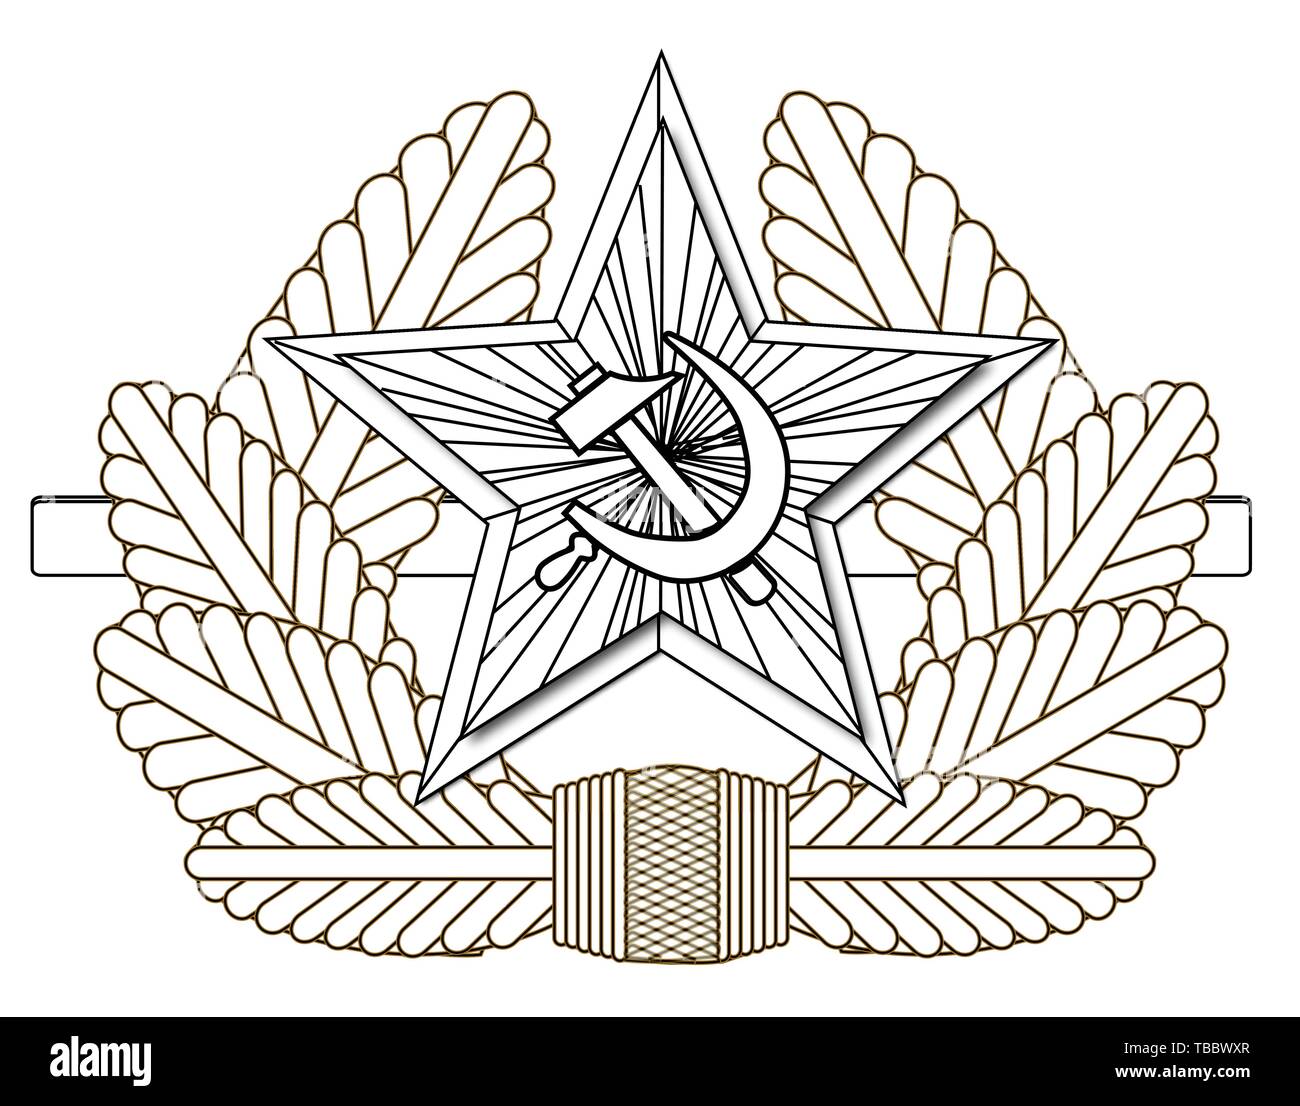 A Russian army enamel pin cap badge Stock Vector